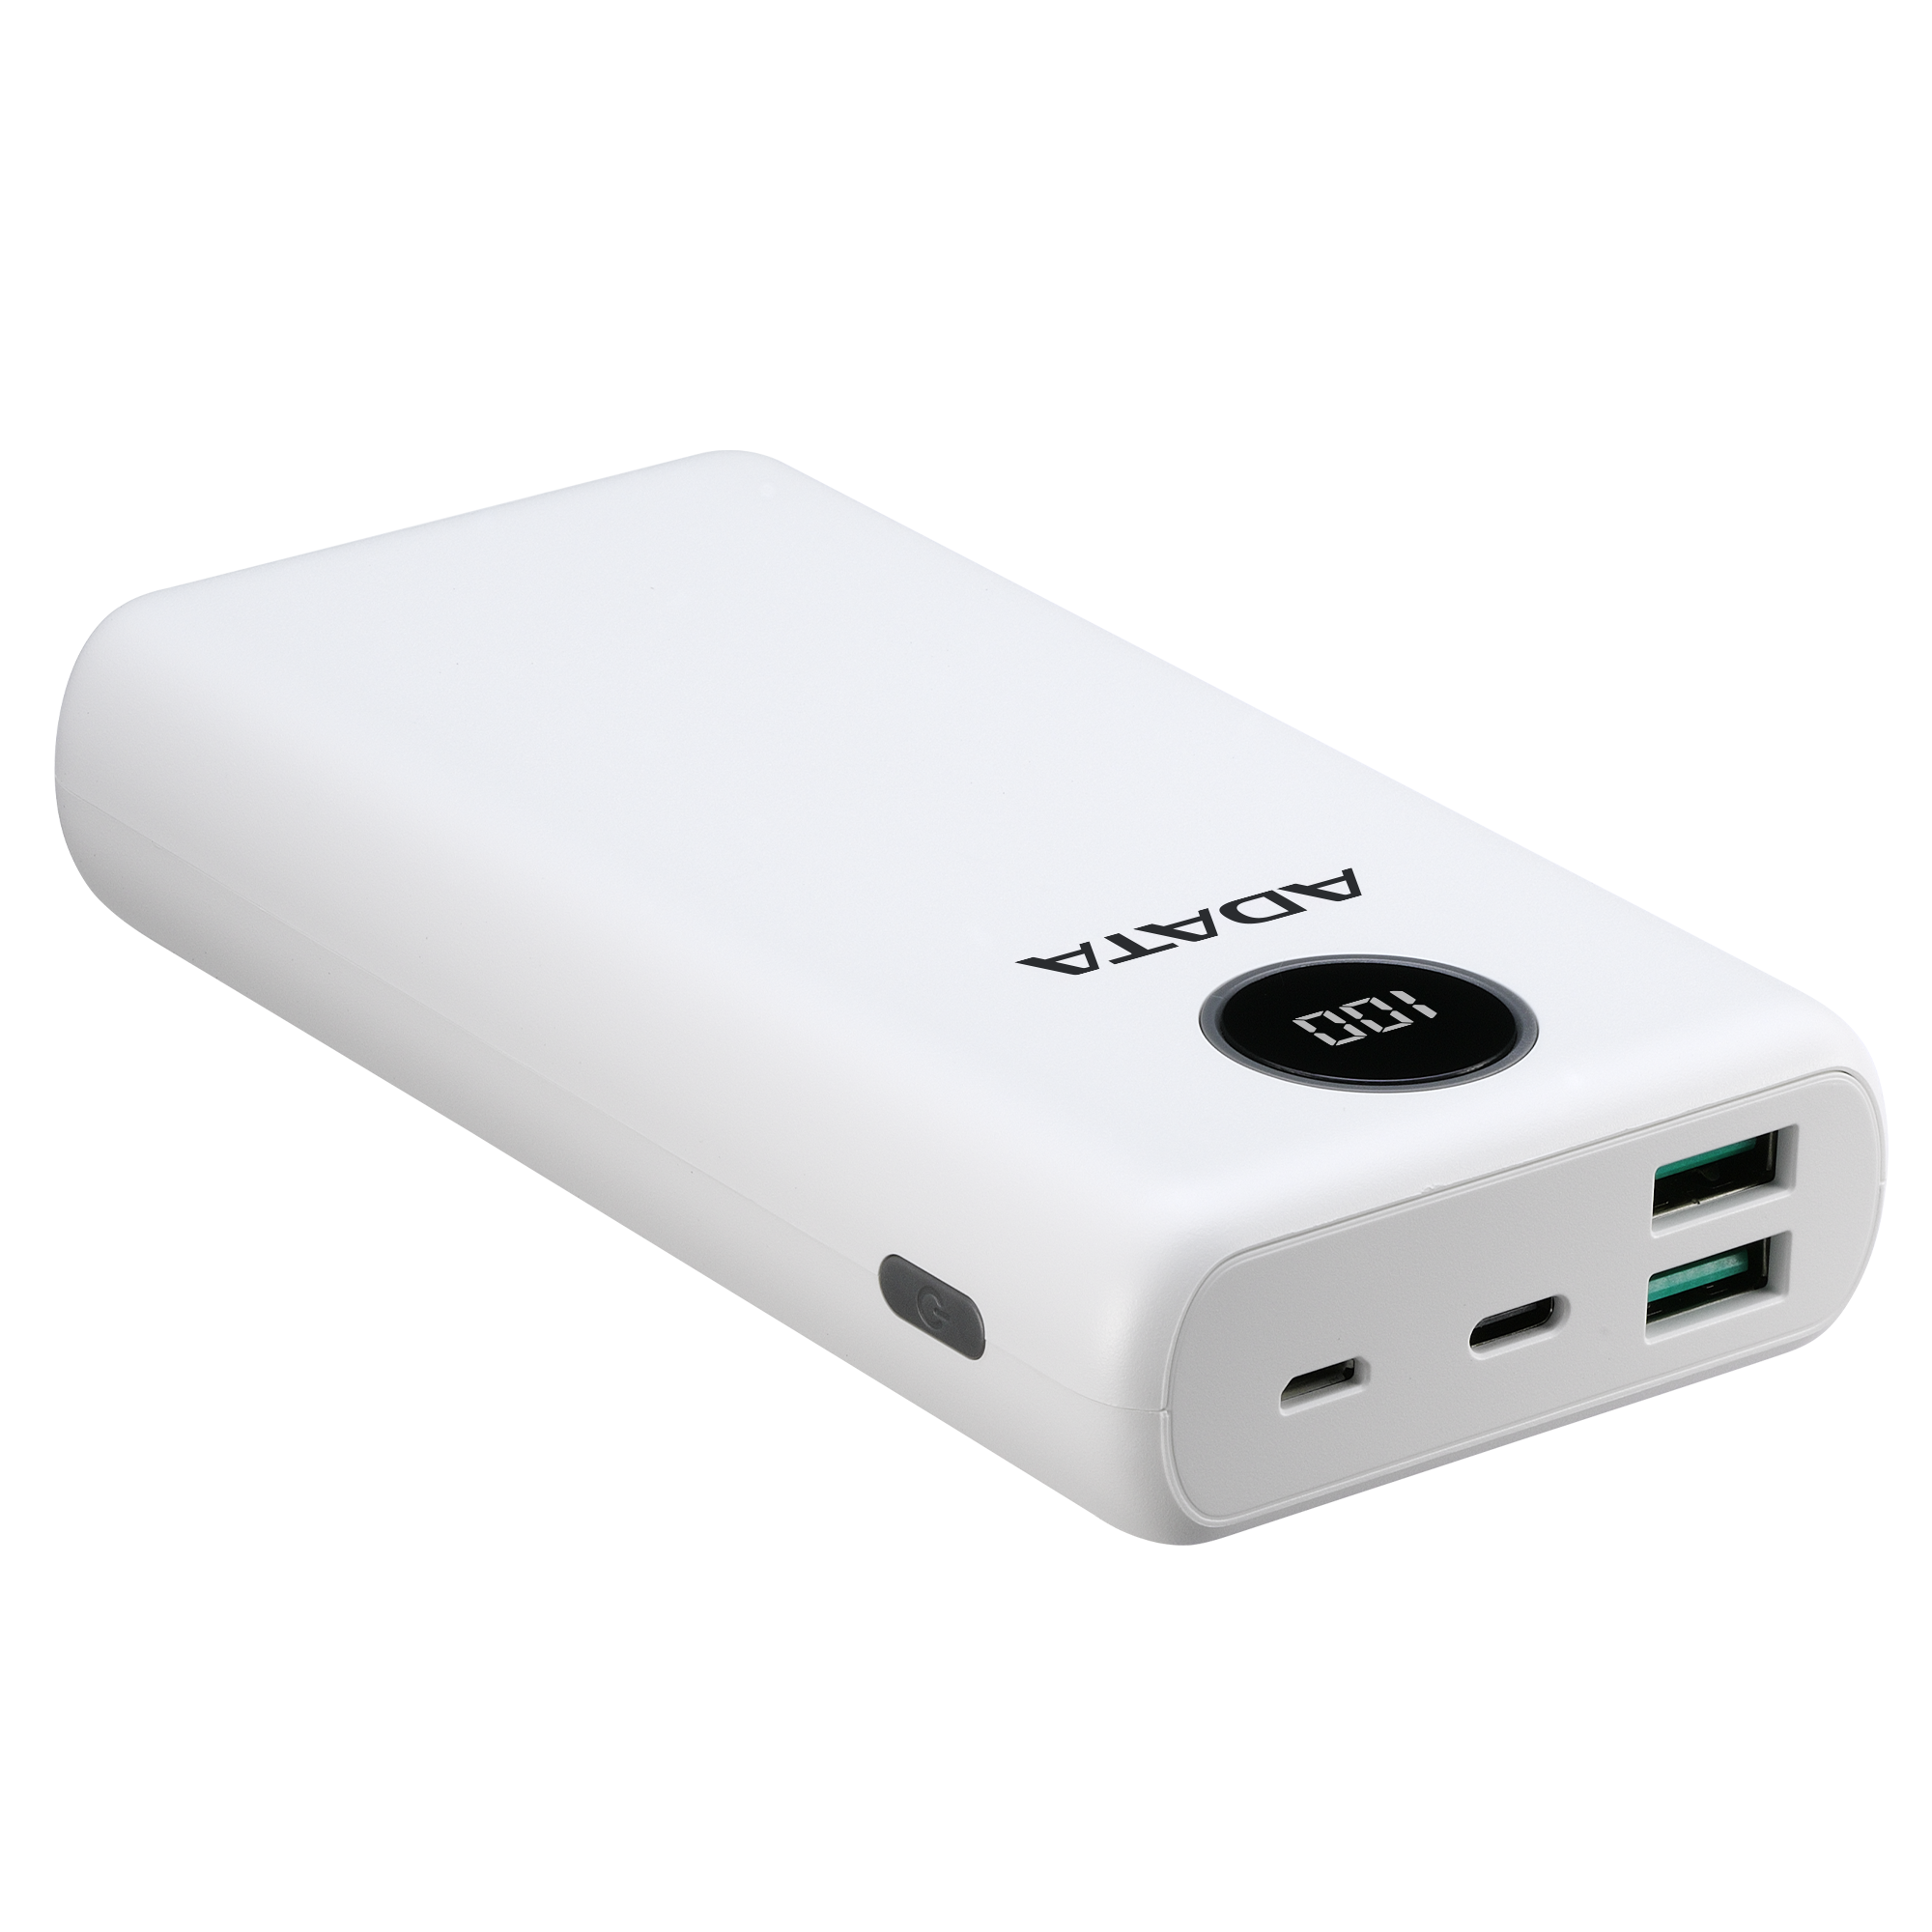 Power Bank (Cargador Portátil), 2 x USB (H) 1x USB-C (H), Capacidad: 20,000 mAh, Color Blanco, ADATA AP20000QCD-DGT-CWH